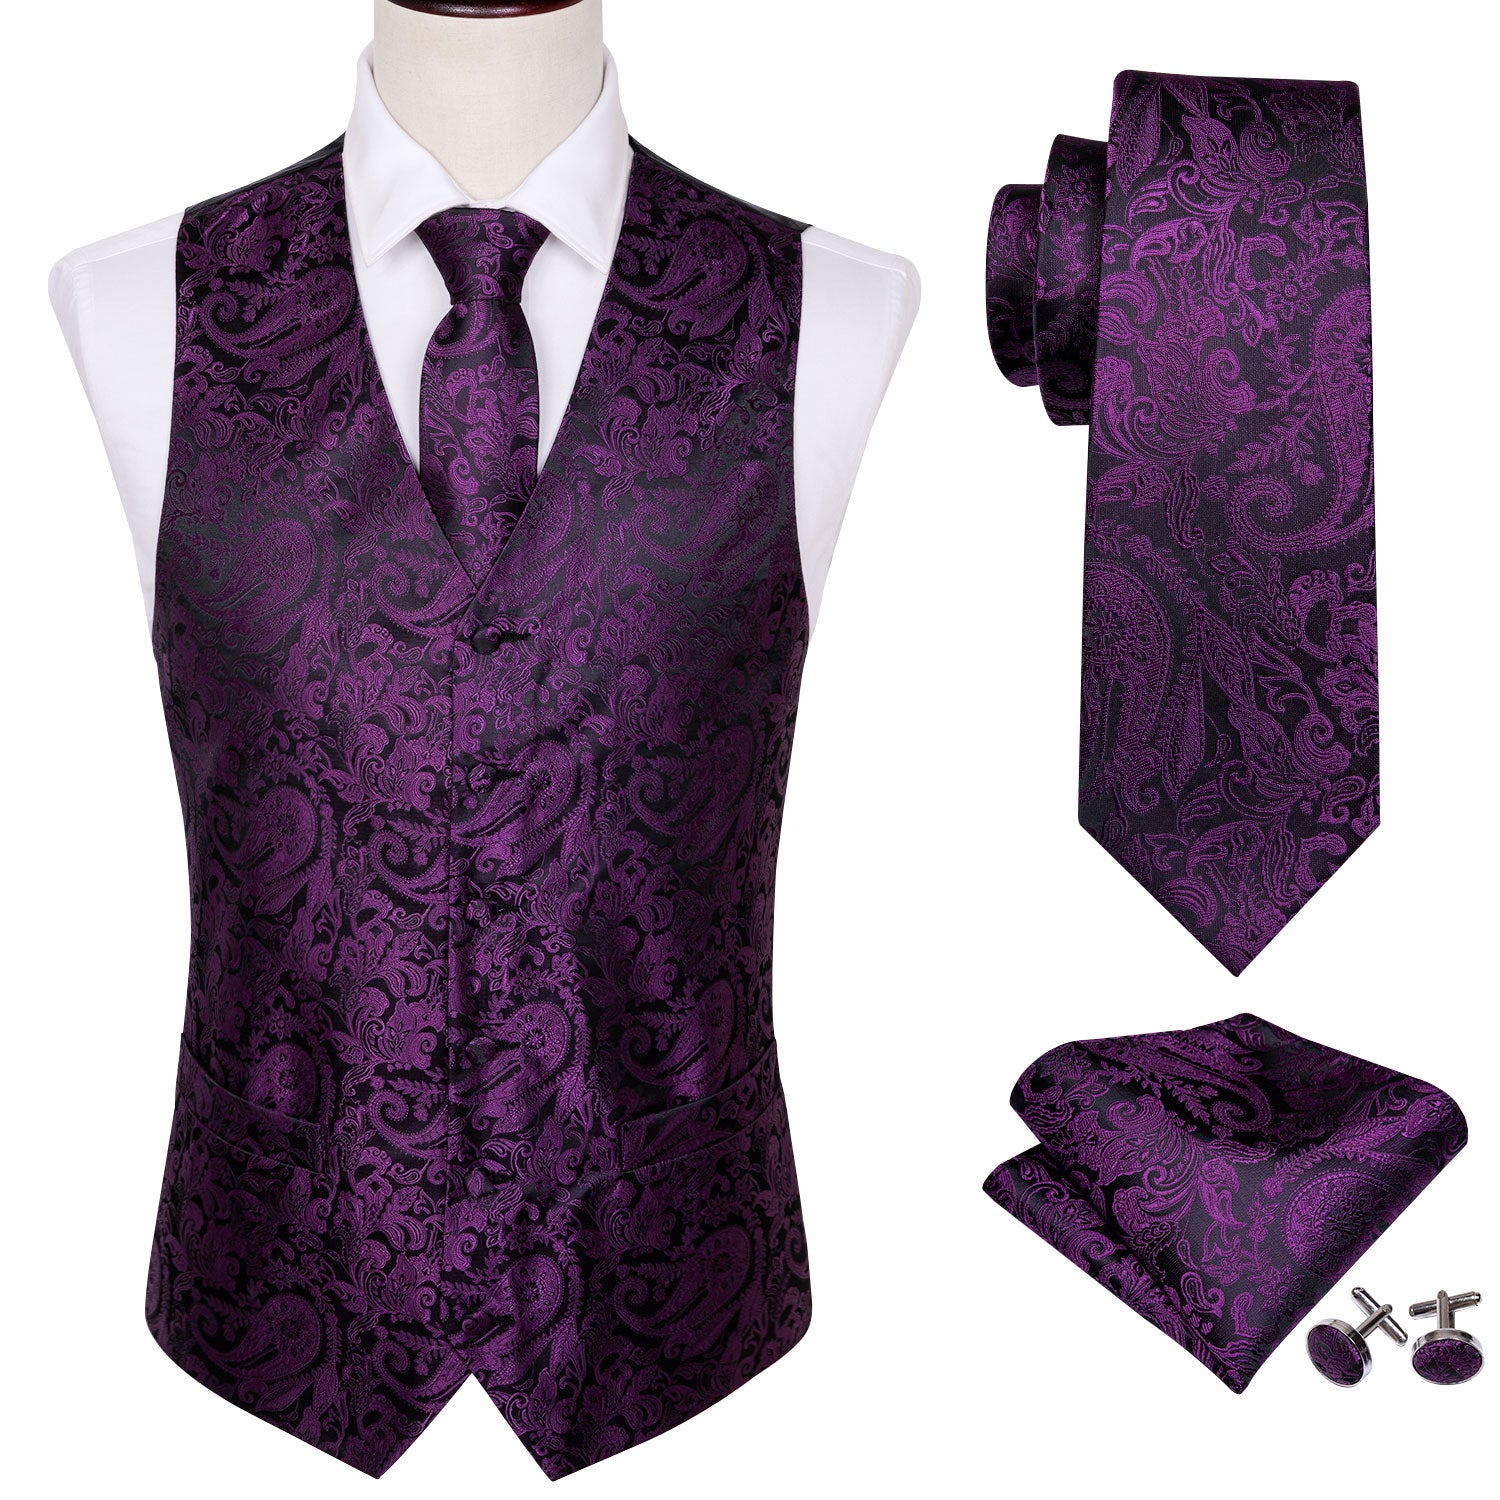 white shirt and purple vest necktie pocket square cufflinks set